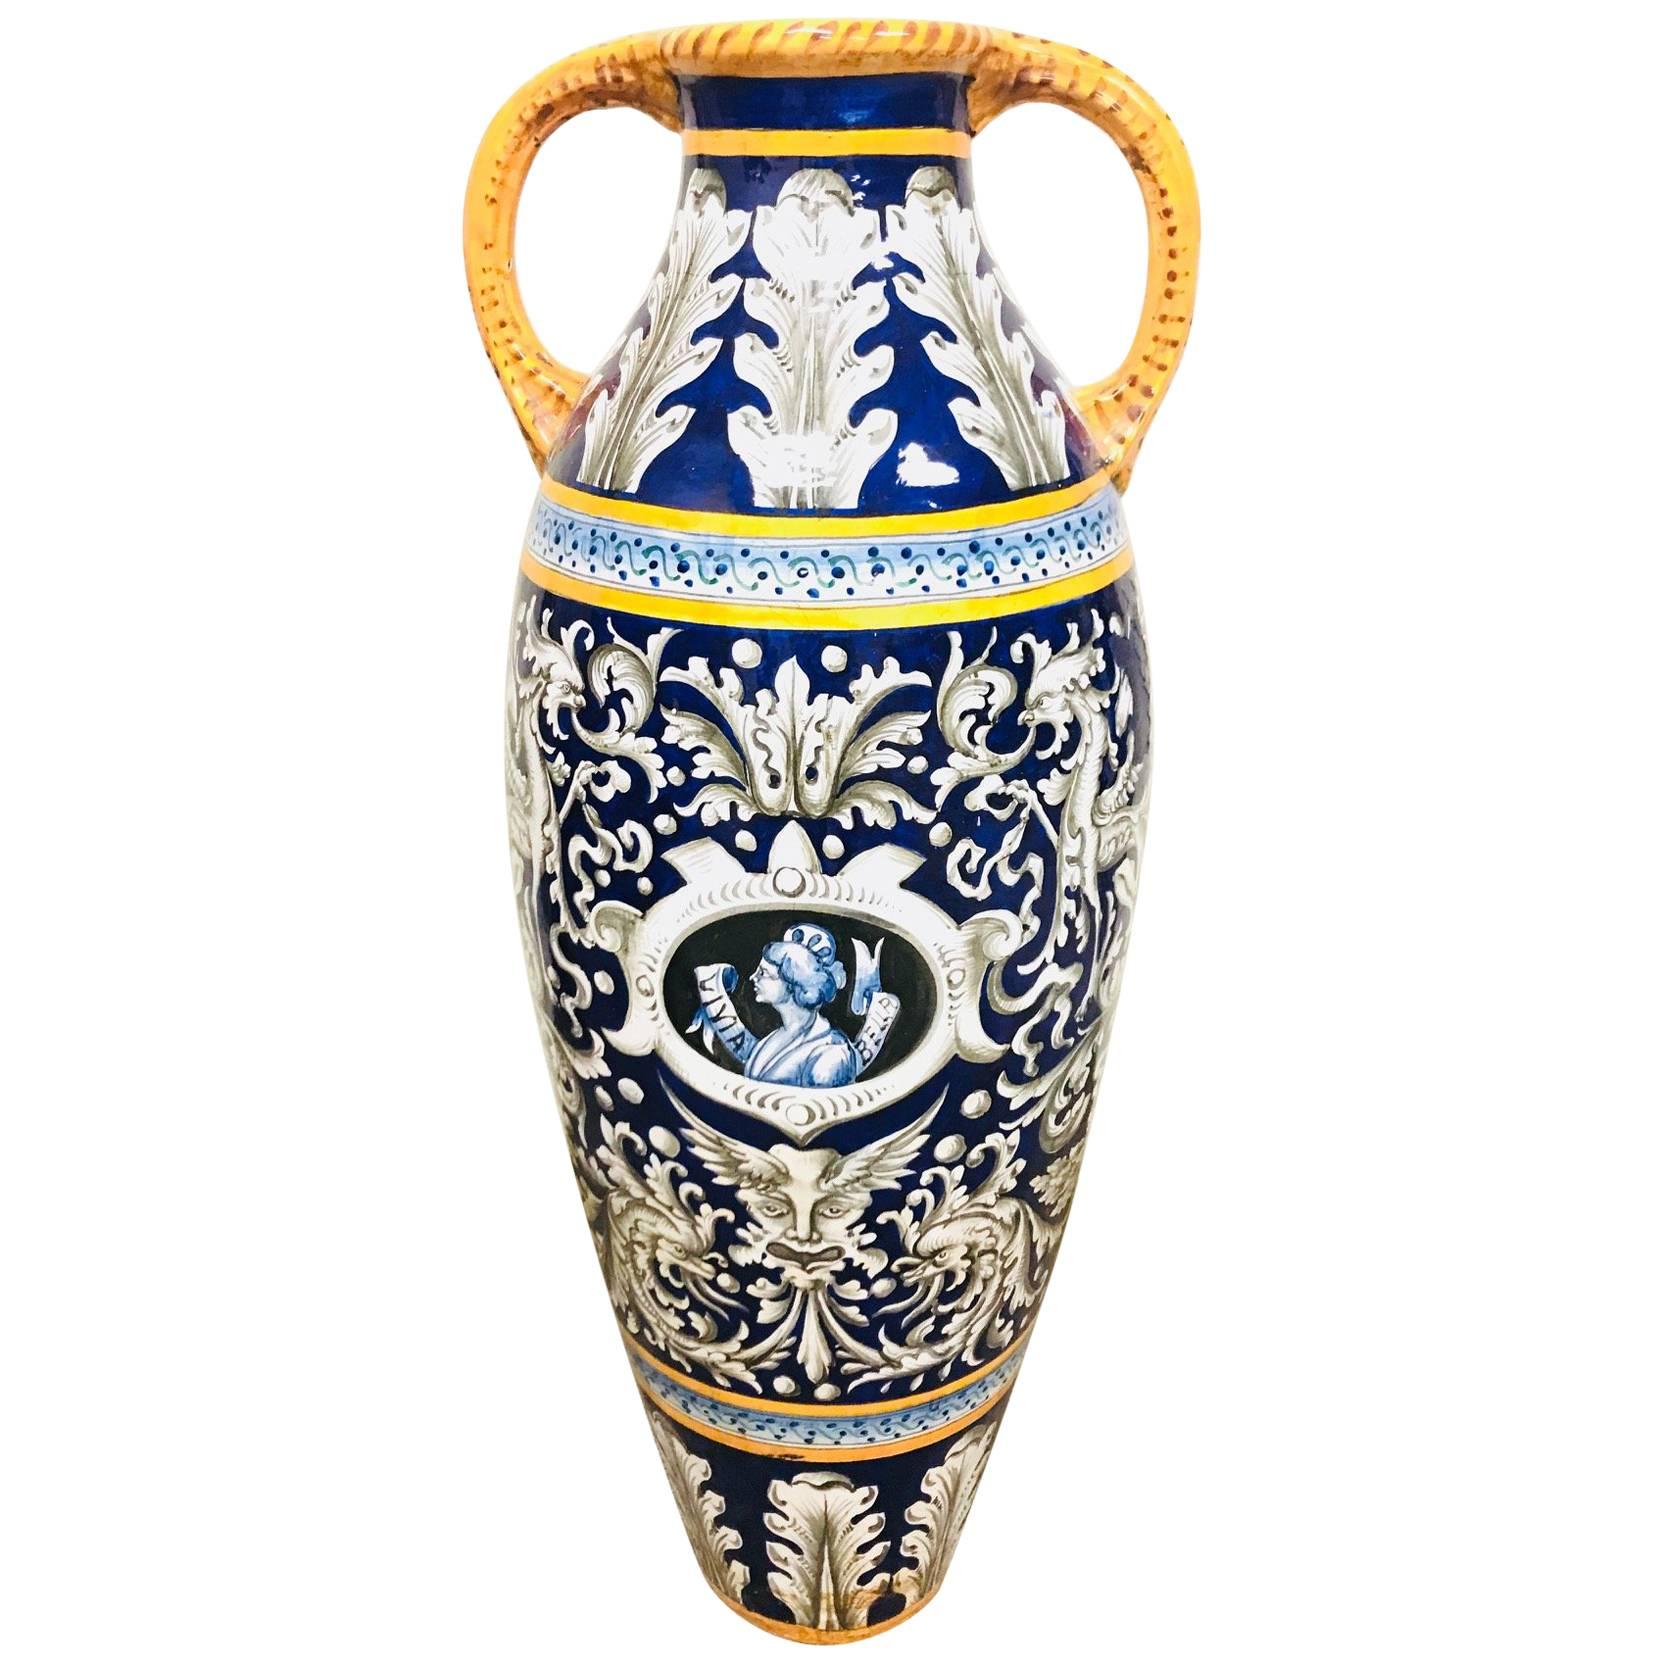 Antique Italian Faience Glazed Ceramic Vase, Palace Size